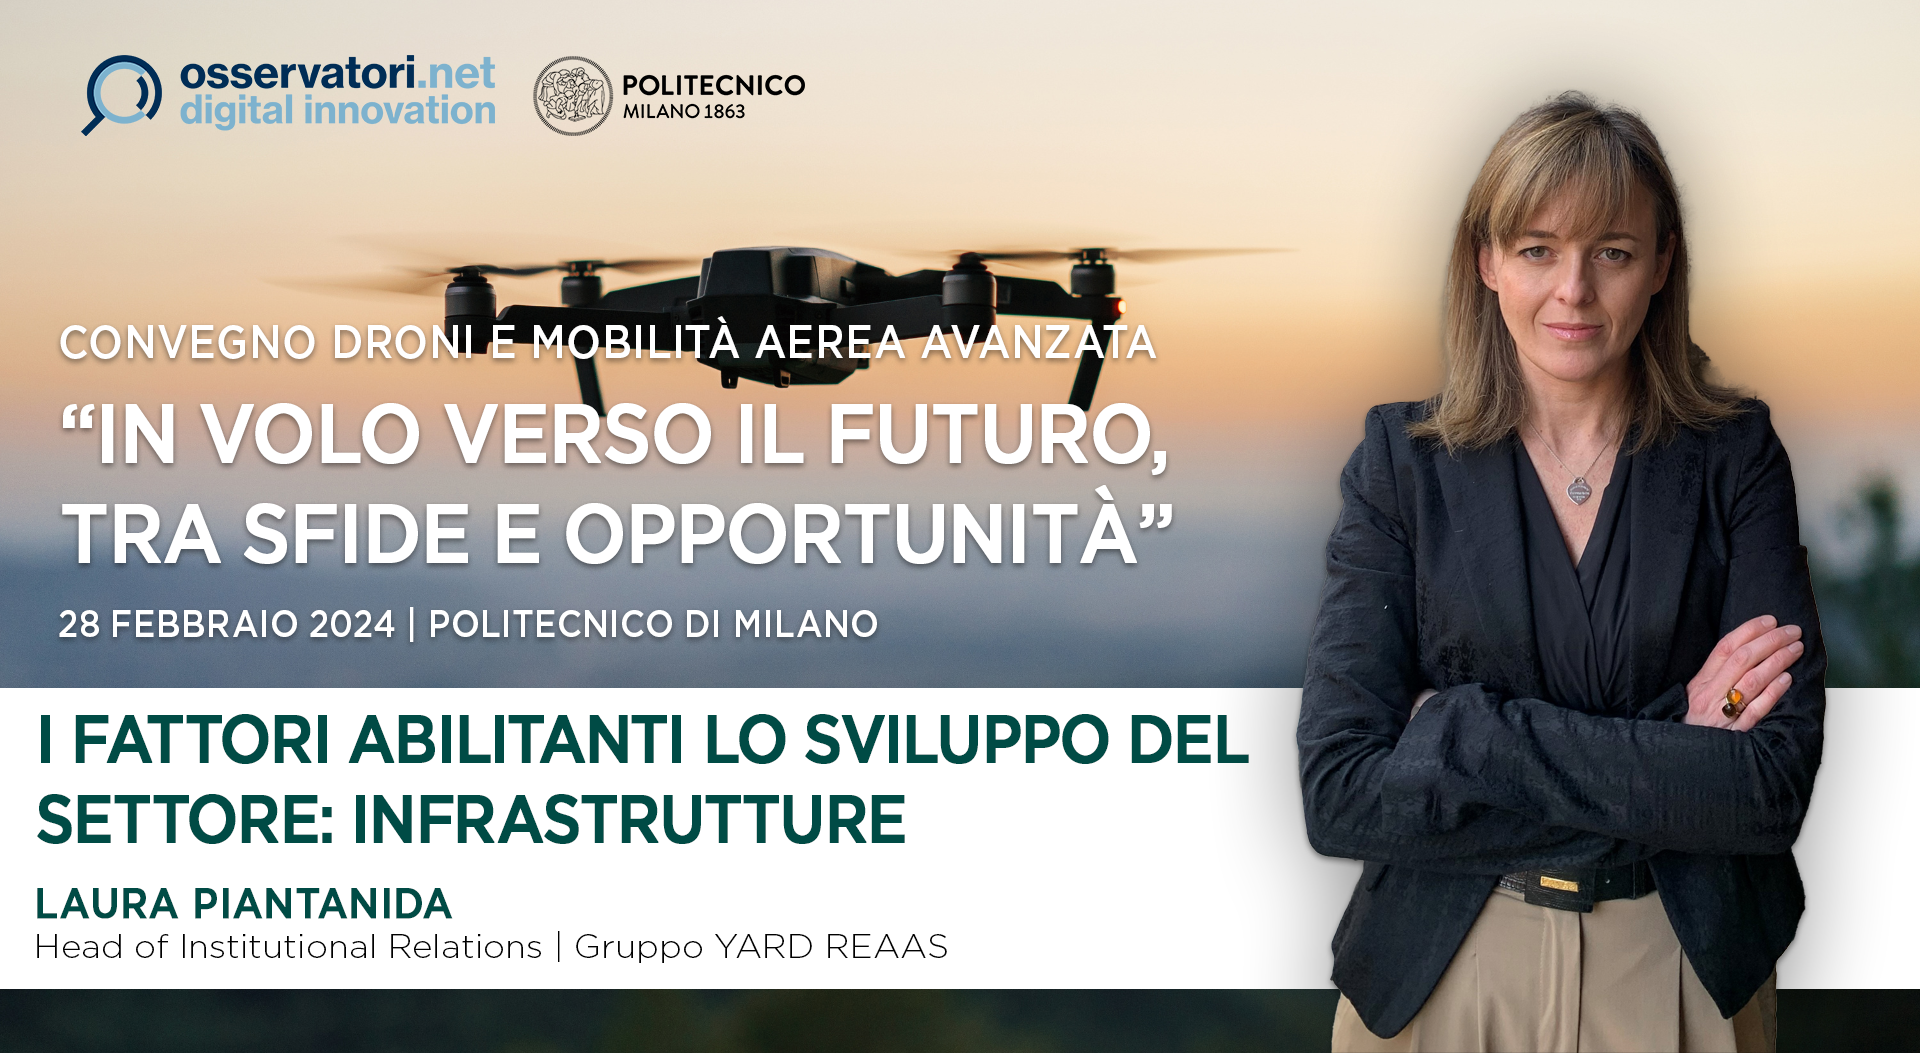 Laura Piantanida relatrice al convegno “Droni e Mobilità Aerea Avanzata: in volo verso il futuro, tra sfide e opportunità” dell’Osservatorio Droni e Mobilità Aerea Avanzata